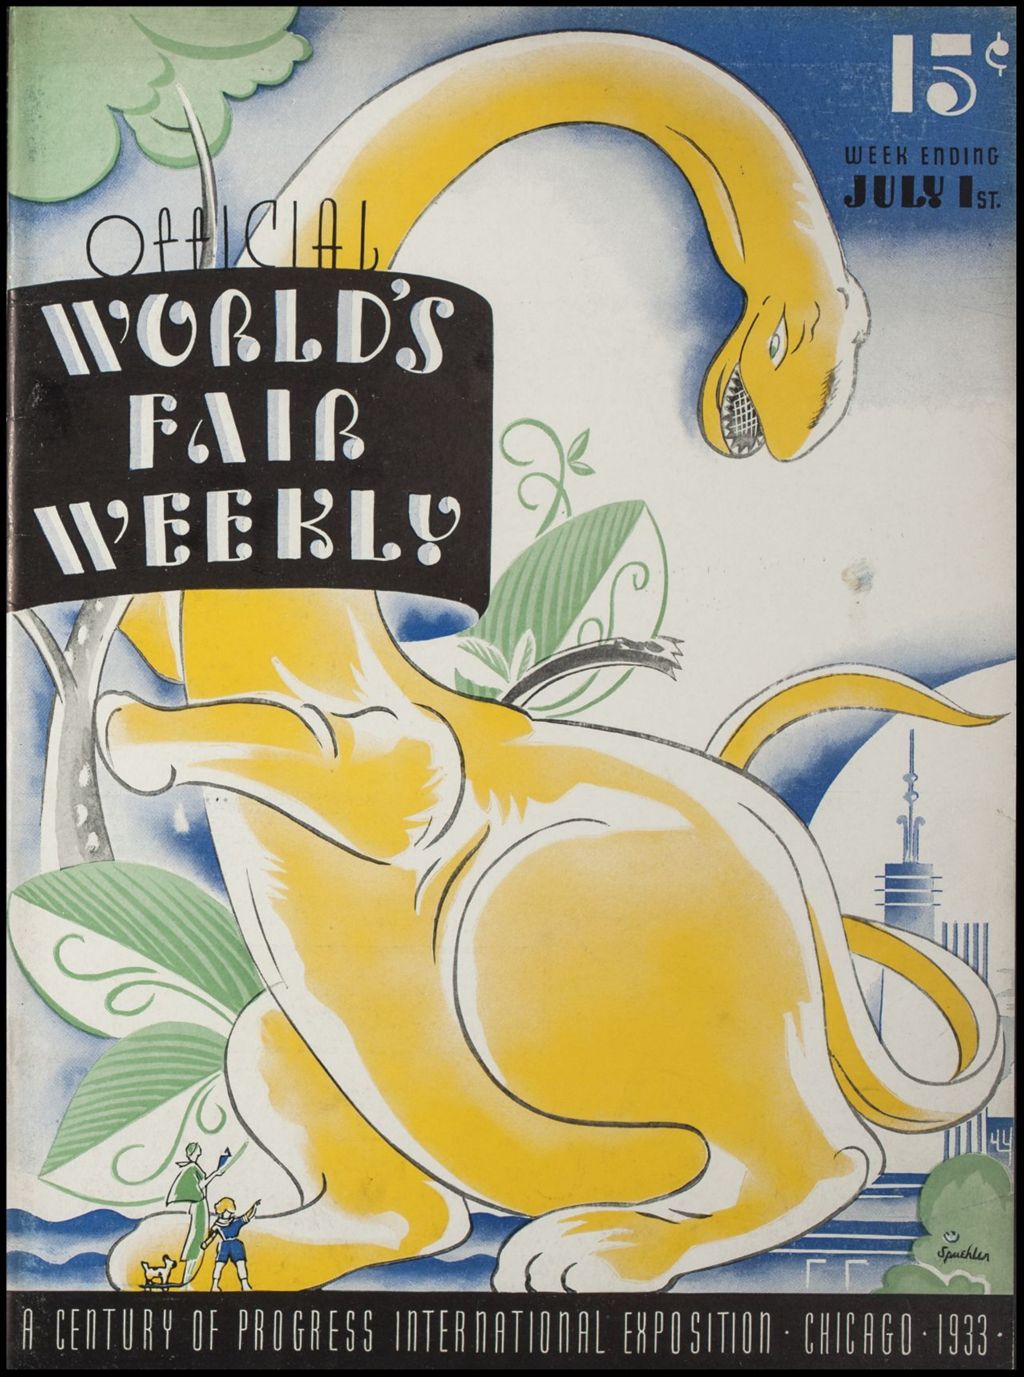 World's Fair Weekly, Week Ending July 1, 1933